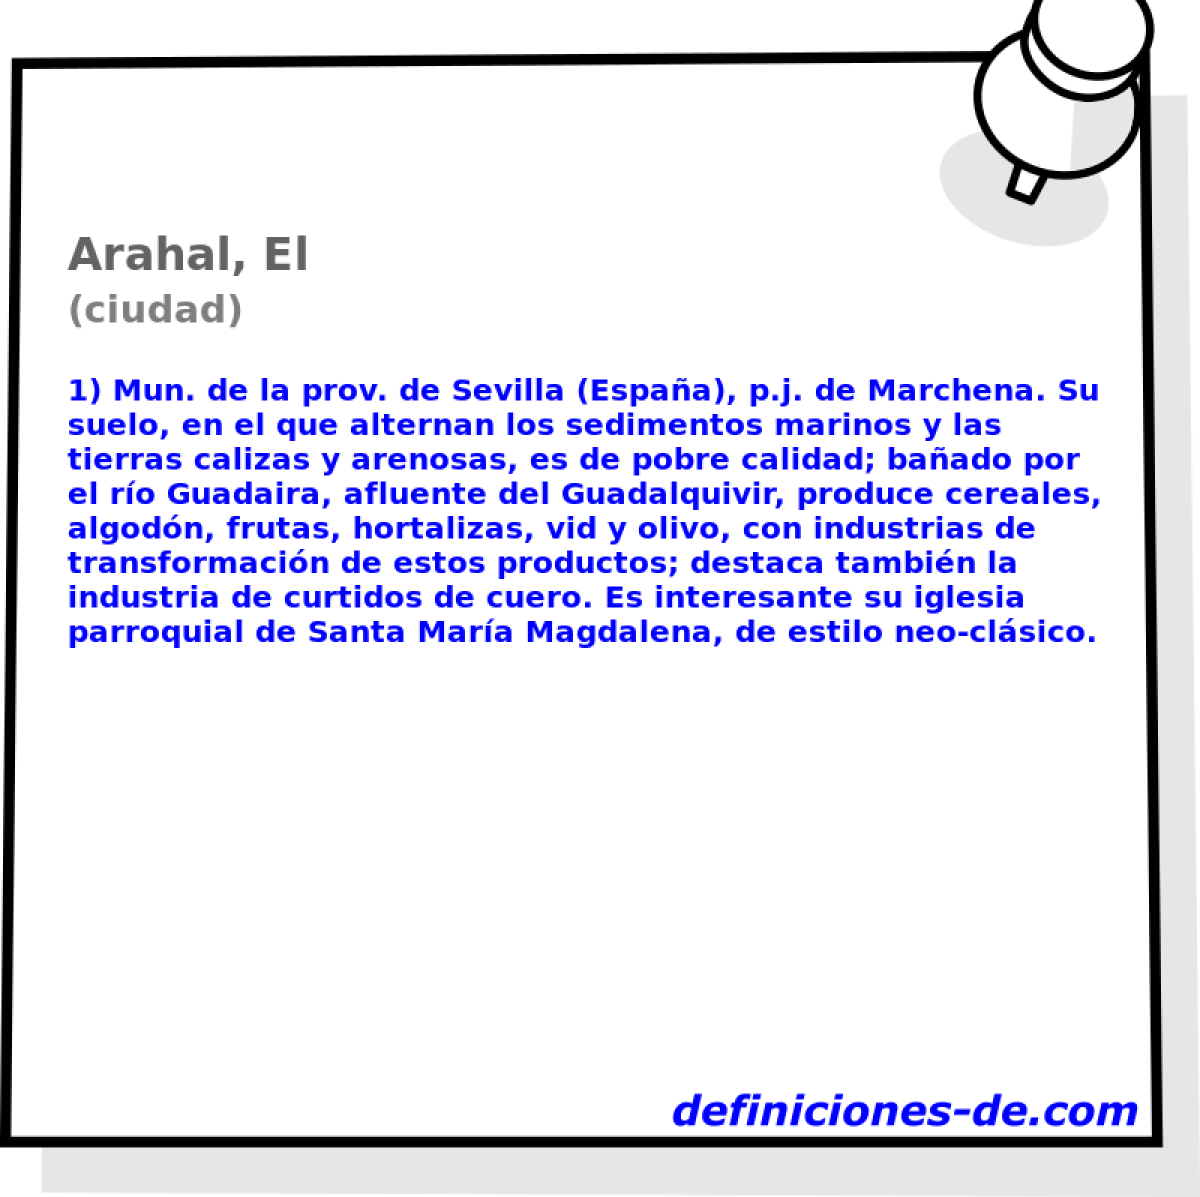 Arahal, El (ciudad)